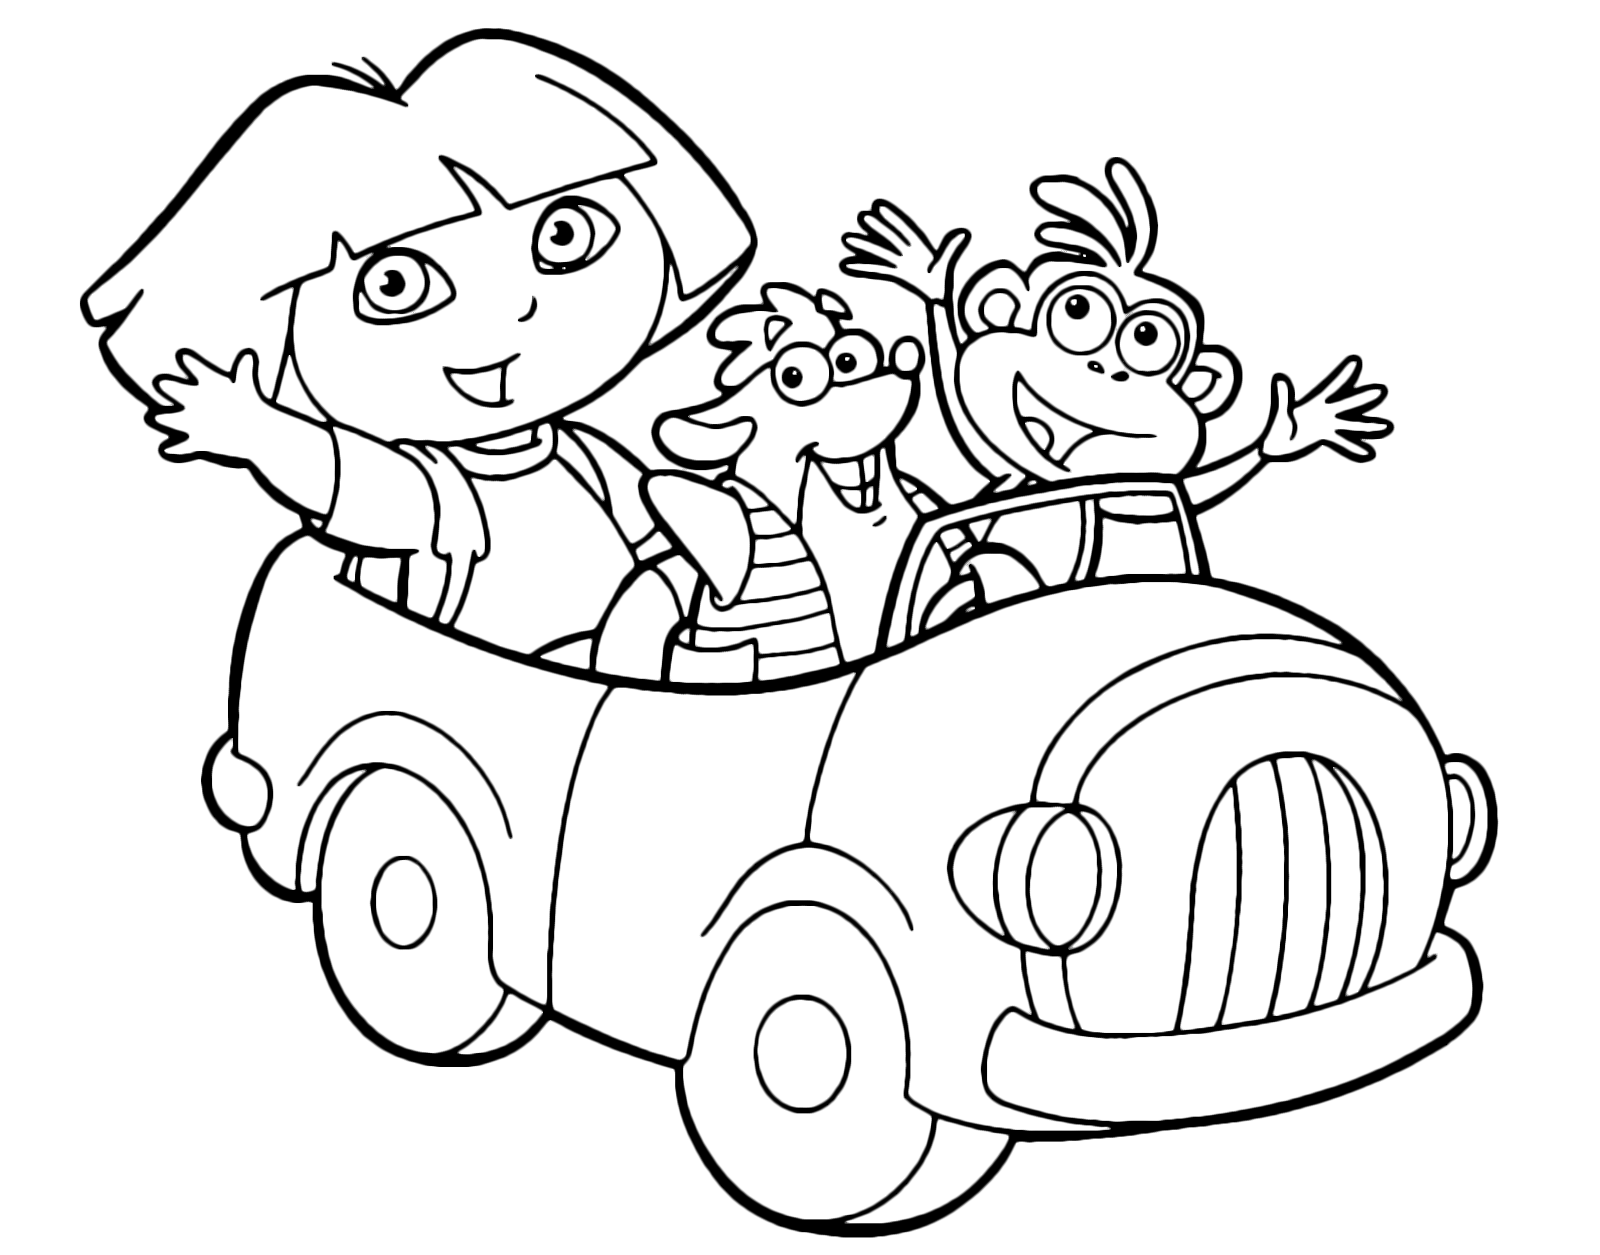 Dora l'esploratrice - Dora Boots e Tyco salutano dalla macchina